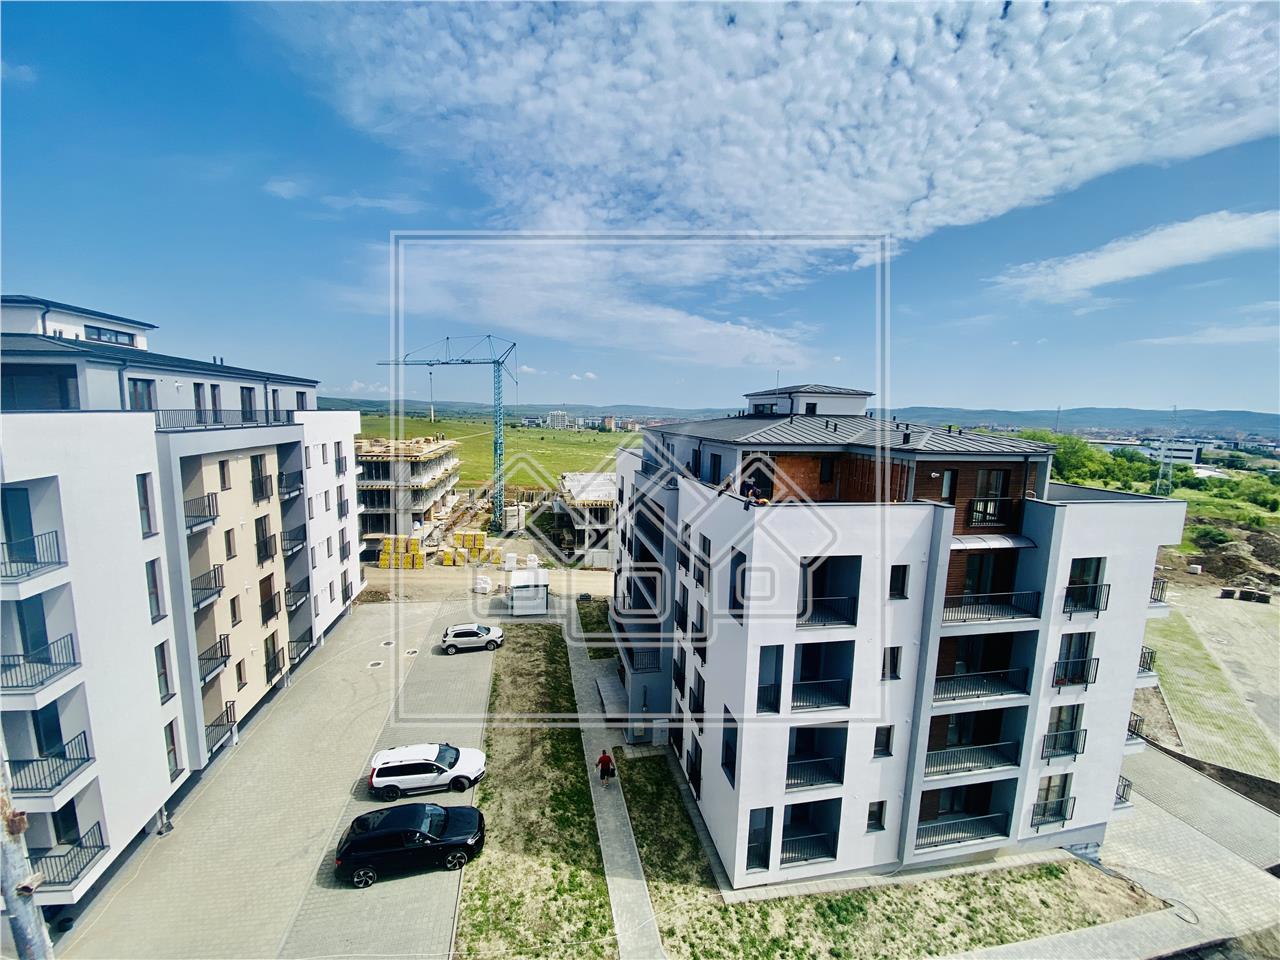 Apartament de vanzare in Sibiu - Intabulat - 67.83mp  - lift -